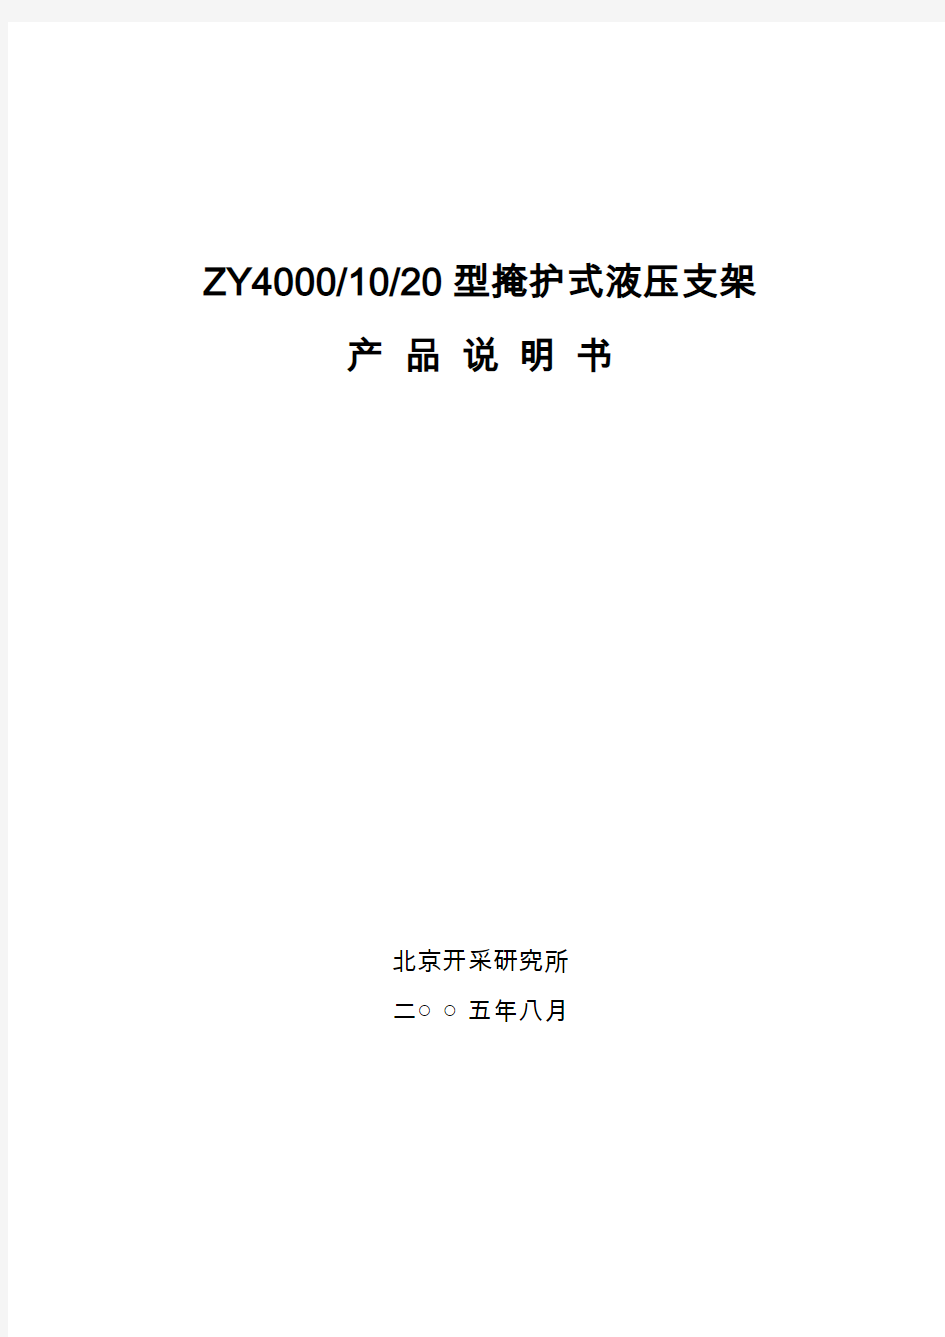 ZY40001020支架产品说明